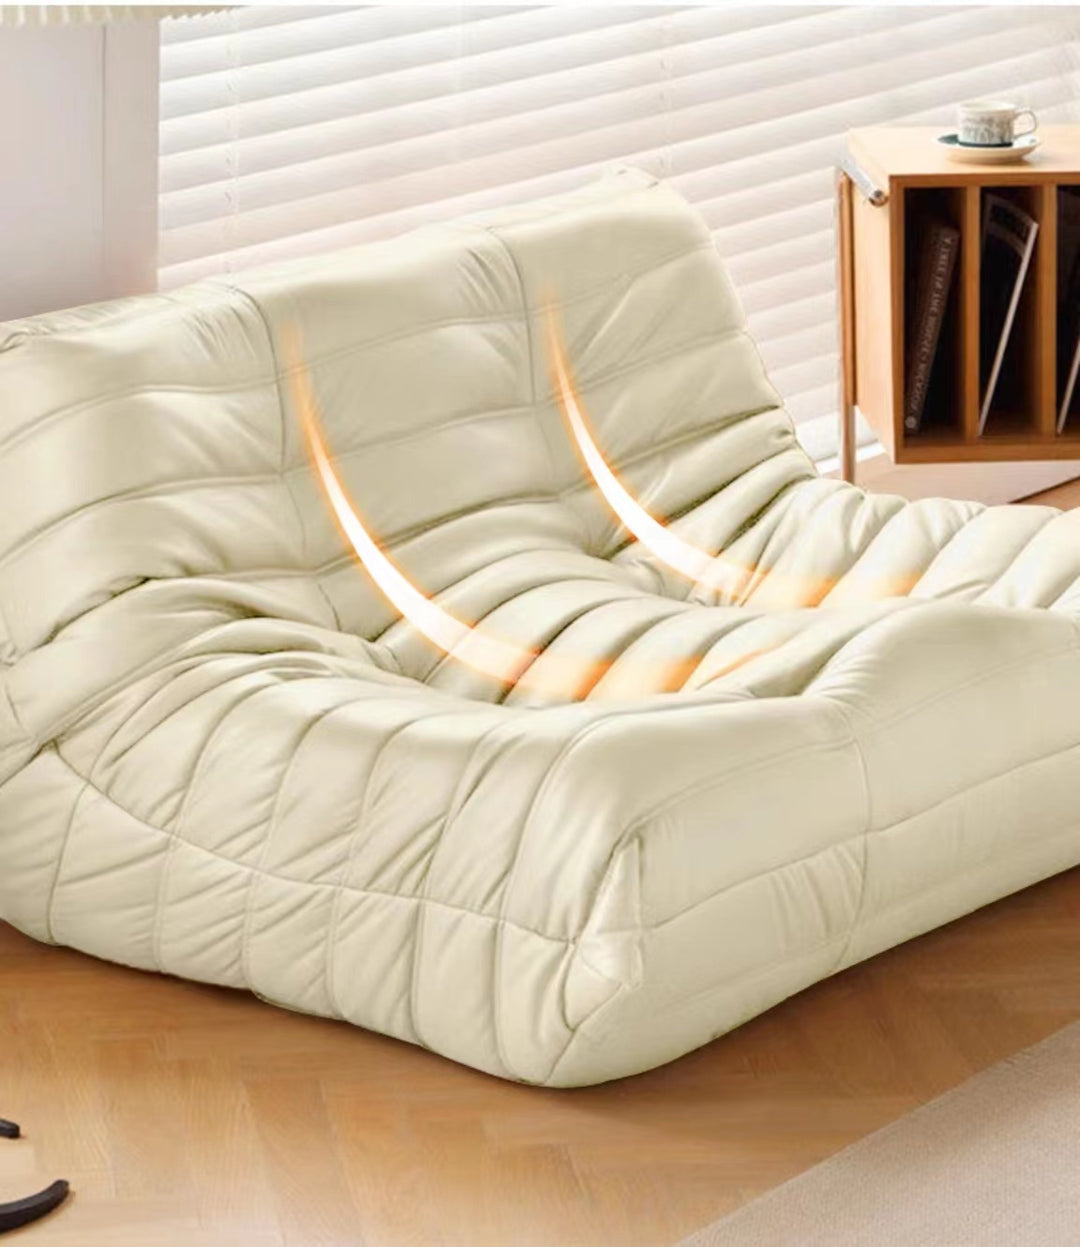 Caterpillar Sofa